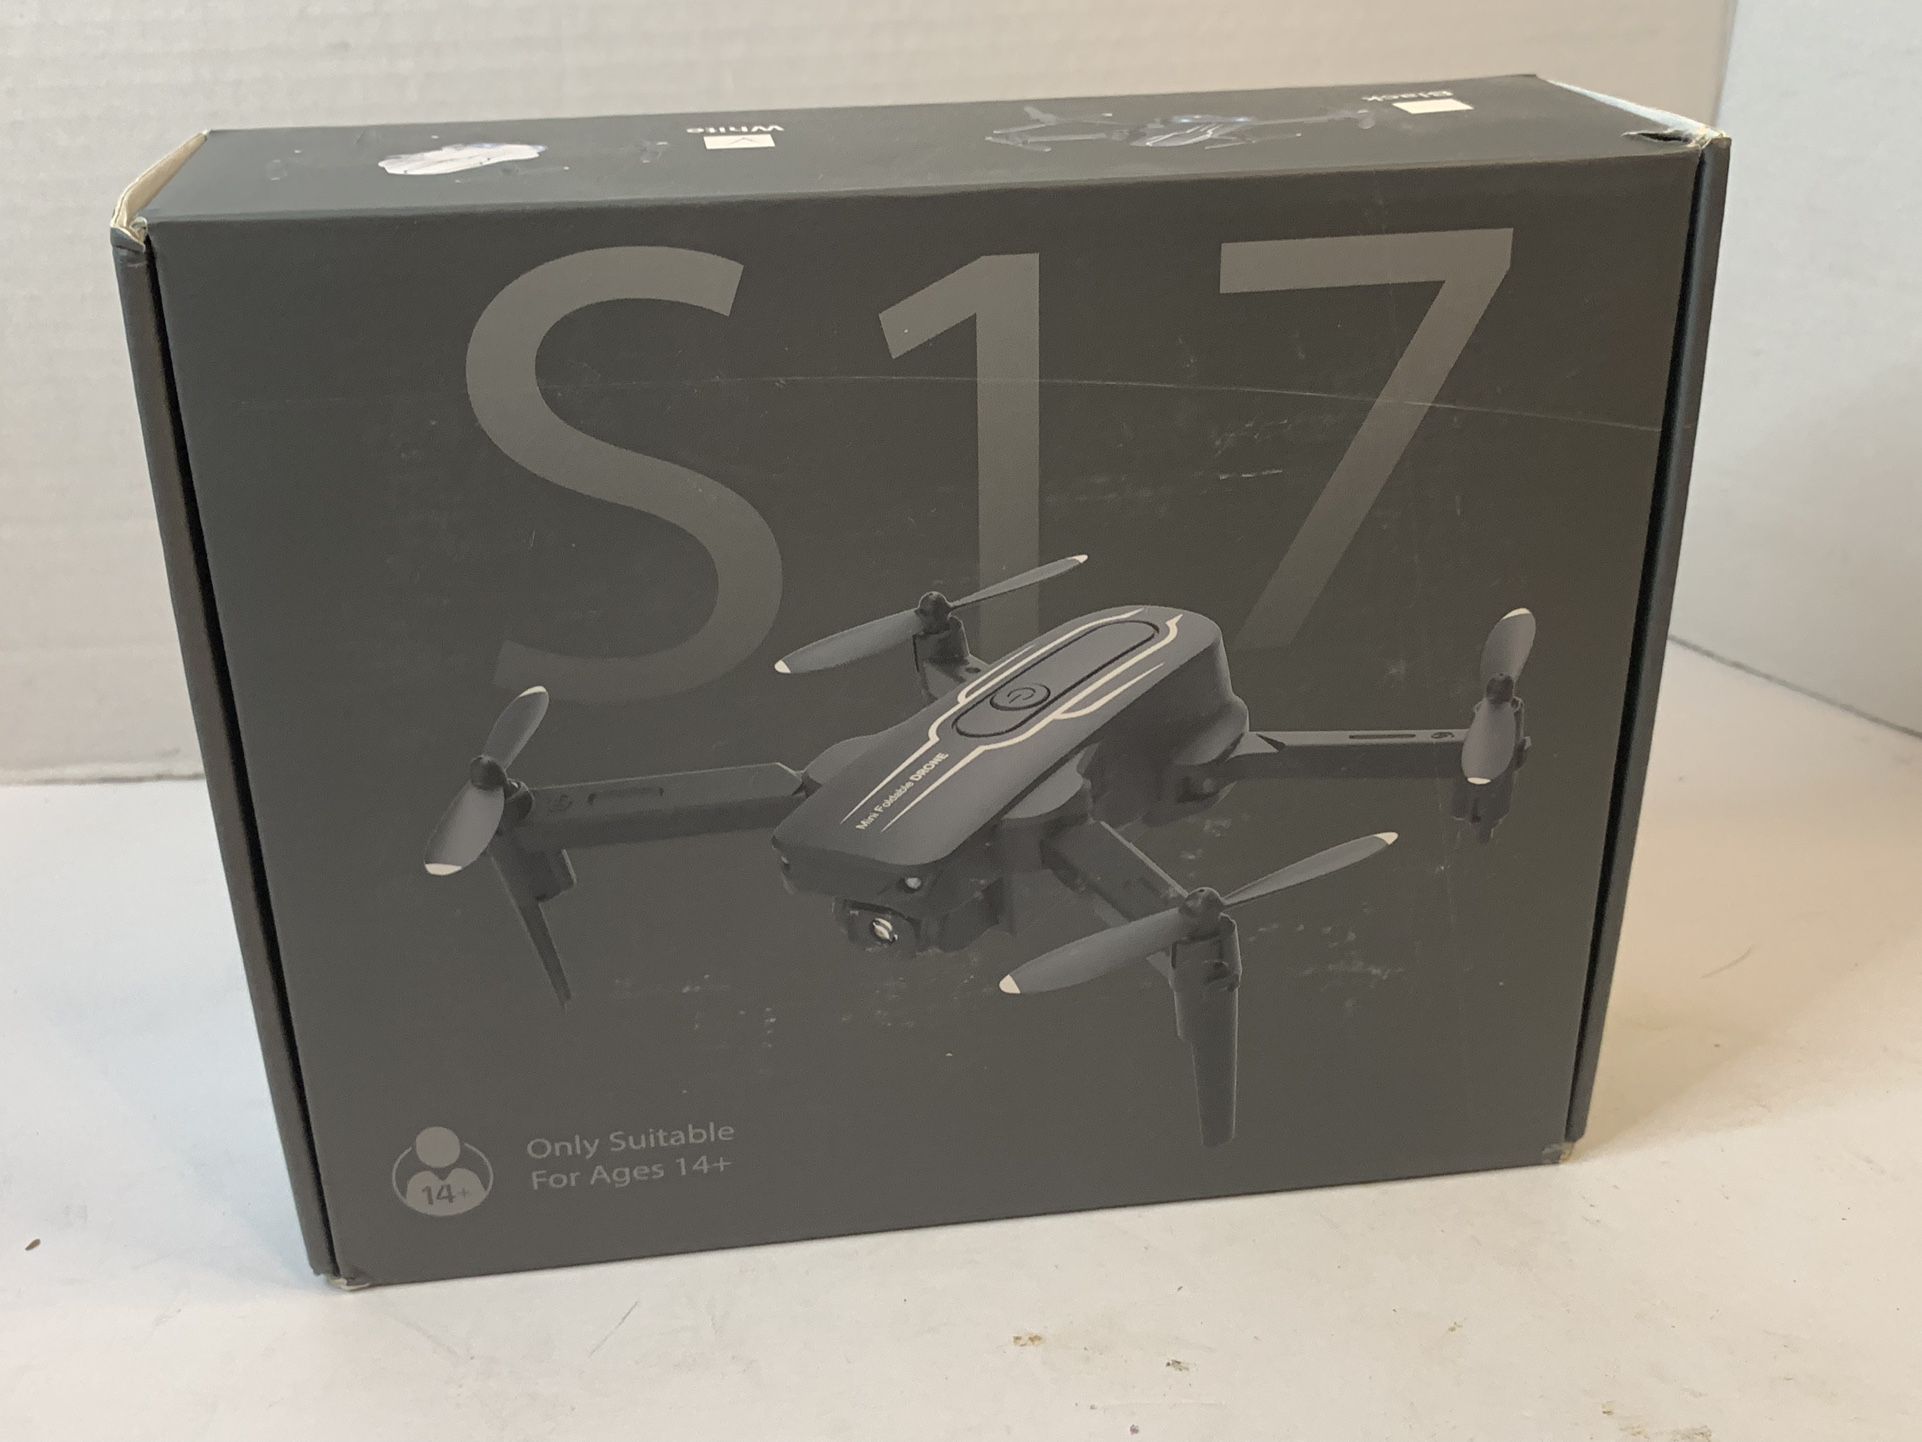 Mini Drone with Camera S17 - 1080P HD FPV Drone Foldable